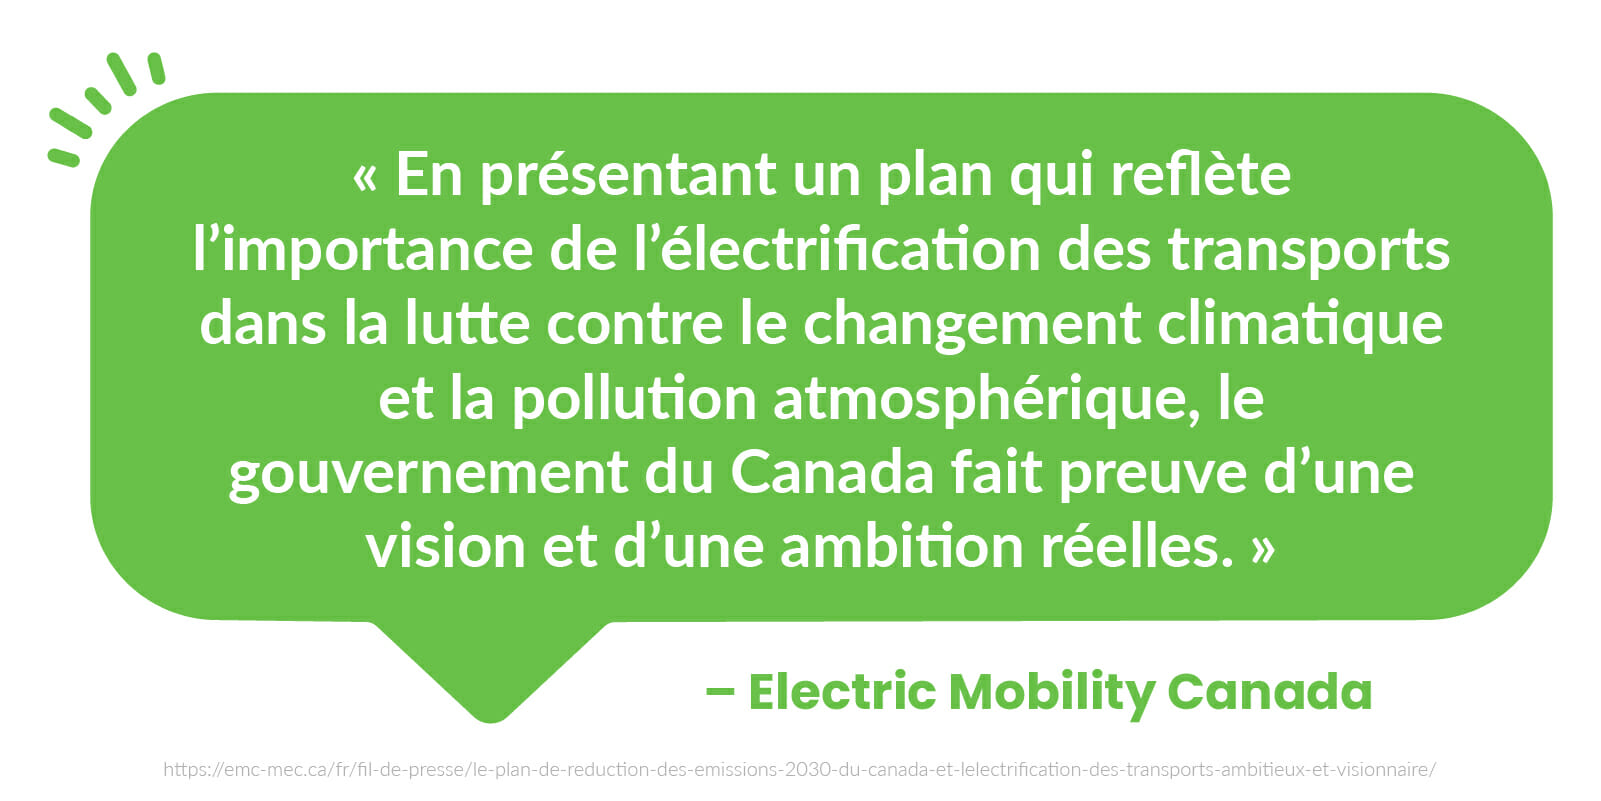  « En présentant un plan qui reflète l’importance de l’électrification des transports dans la lutte contre le changement climatique et la pollution atmosphérique, le gouvernement du Canada fait preuve d’une vision et d’une ambition réelles. » - Mobilité Électrique Canada (MÉC)